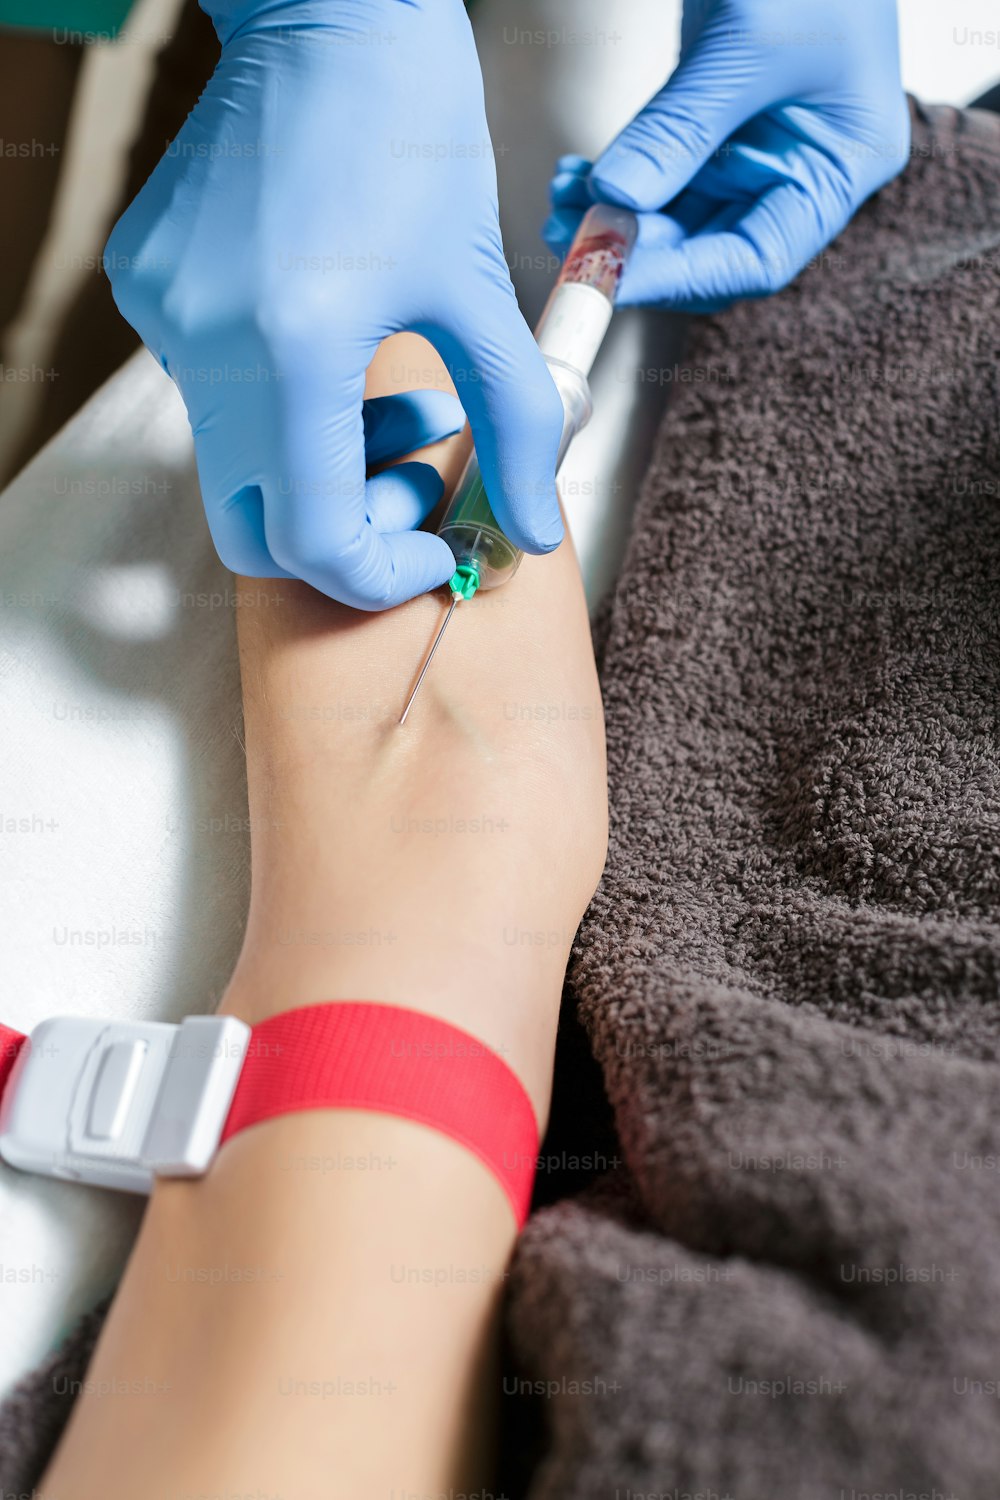 infermiera che preleva un campione di sangue dal braccio del paziente. Preparazione del sangue alla procedura Plasmolifting.